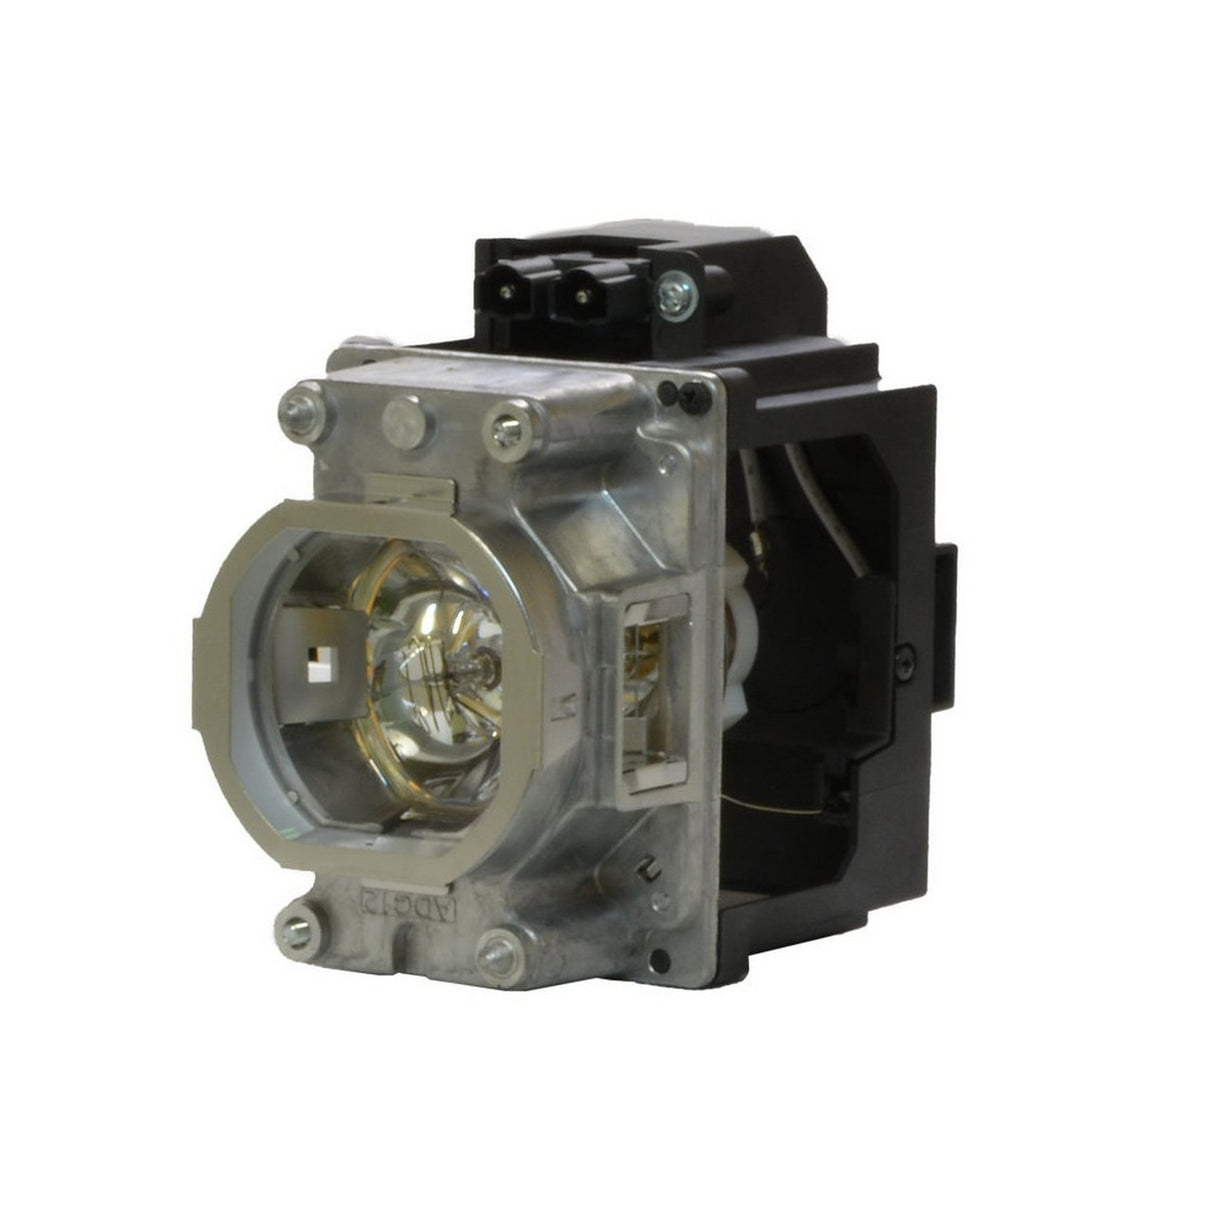 Eiki 22040005 Replacement Projector Lamp for EK-510U, EK-511W, EK-512X